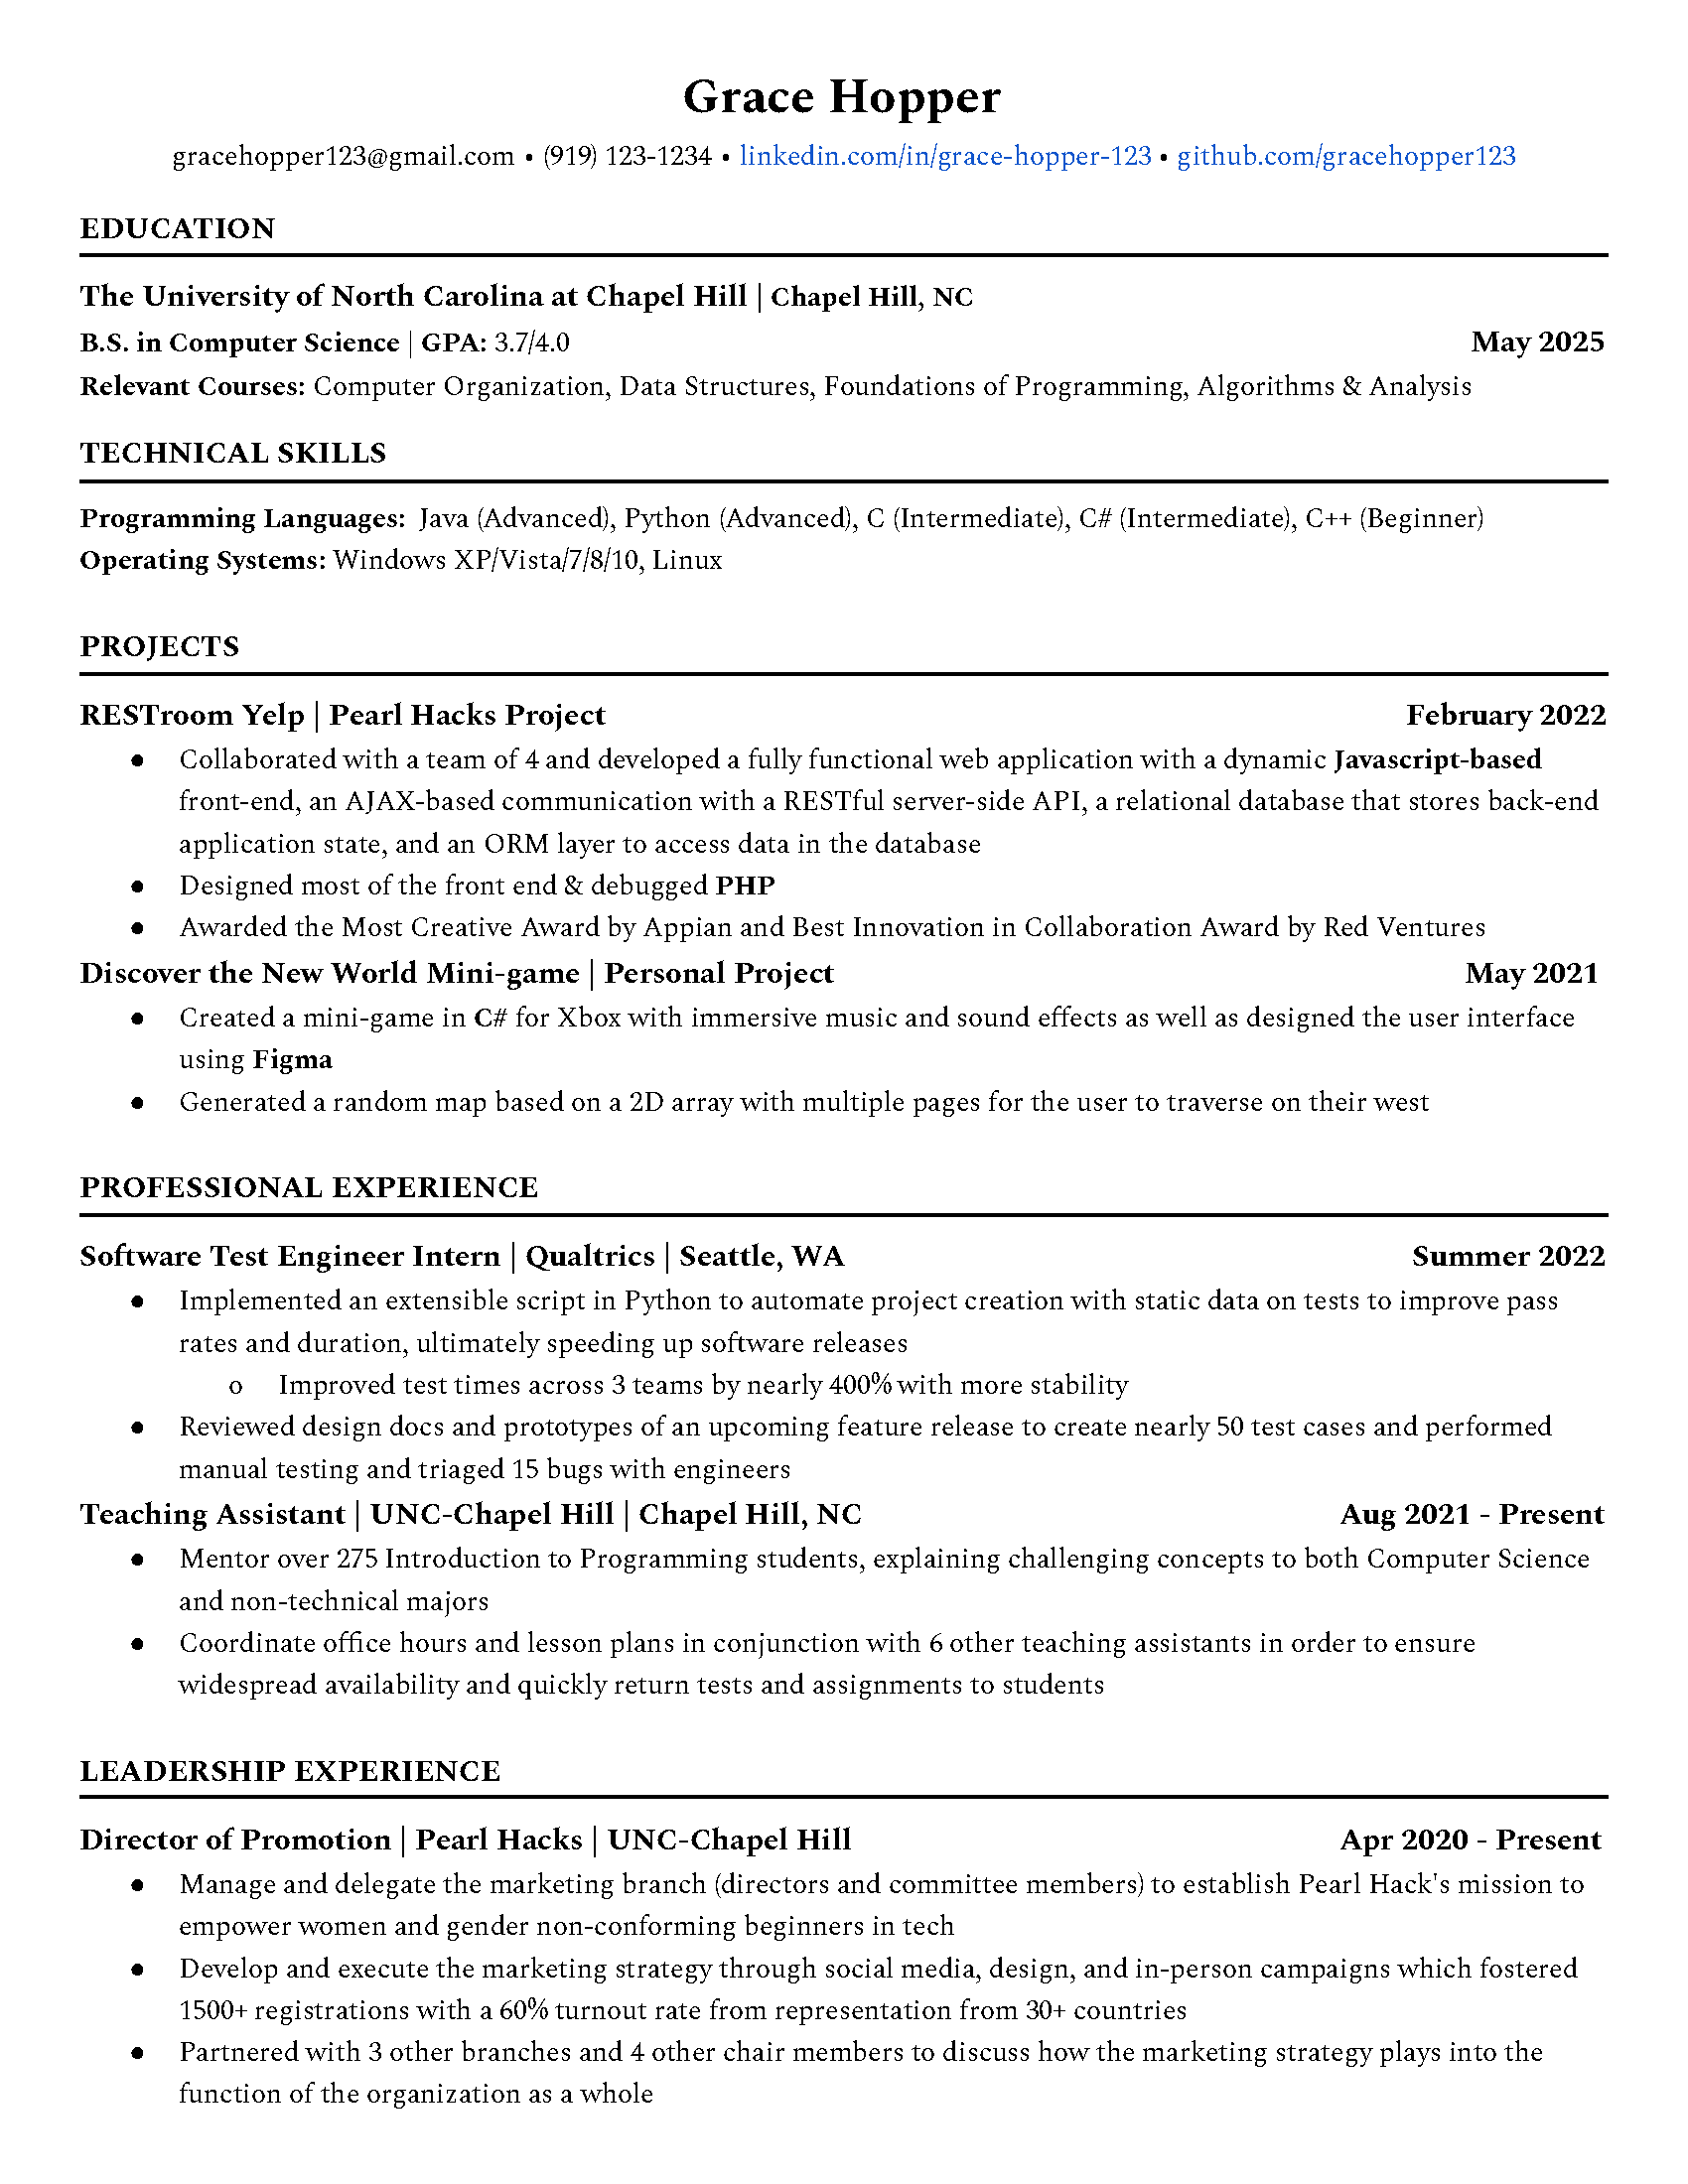 engineering job resume samples